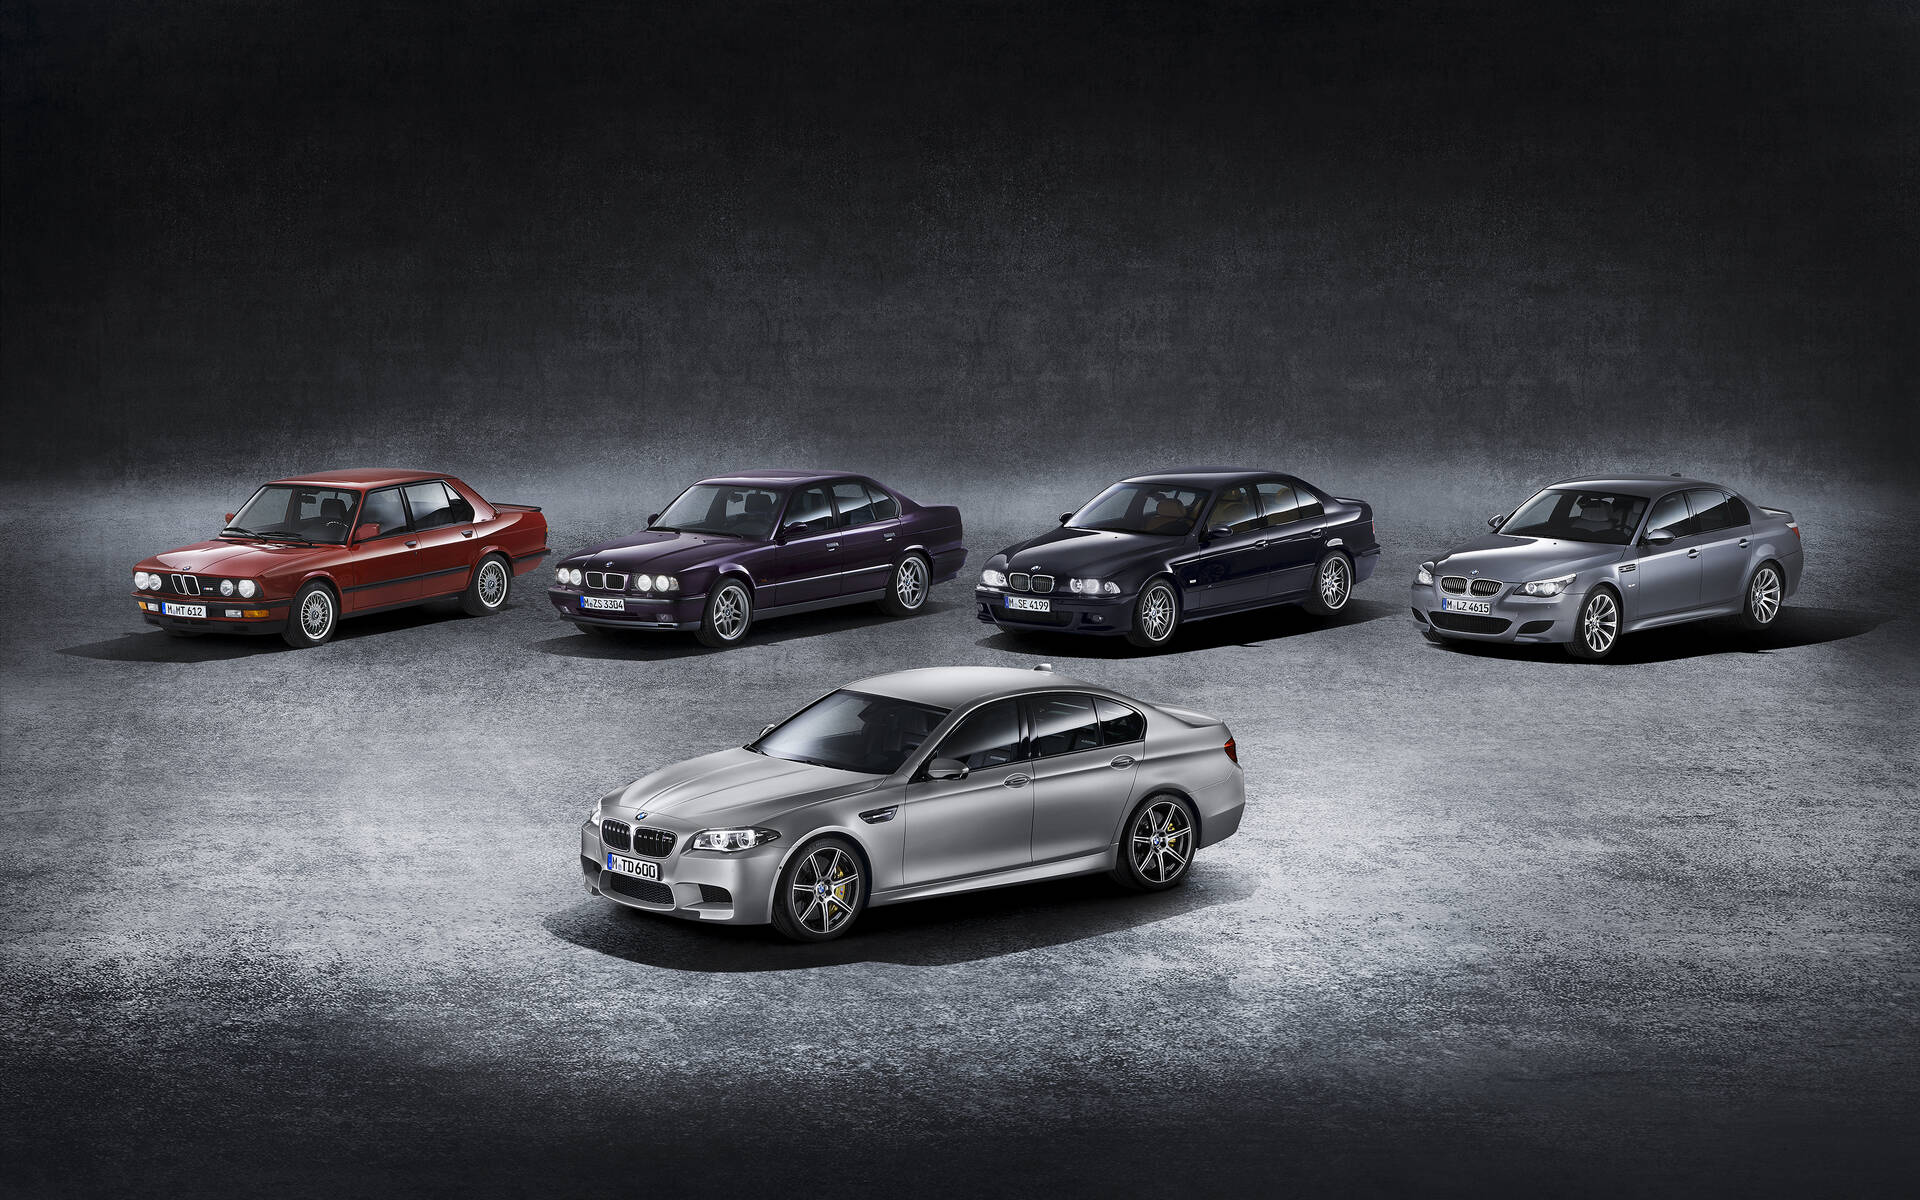 50 ans de voitures BMW M en images 527892-50-ans-de-voitures-bmw-m-en-images